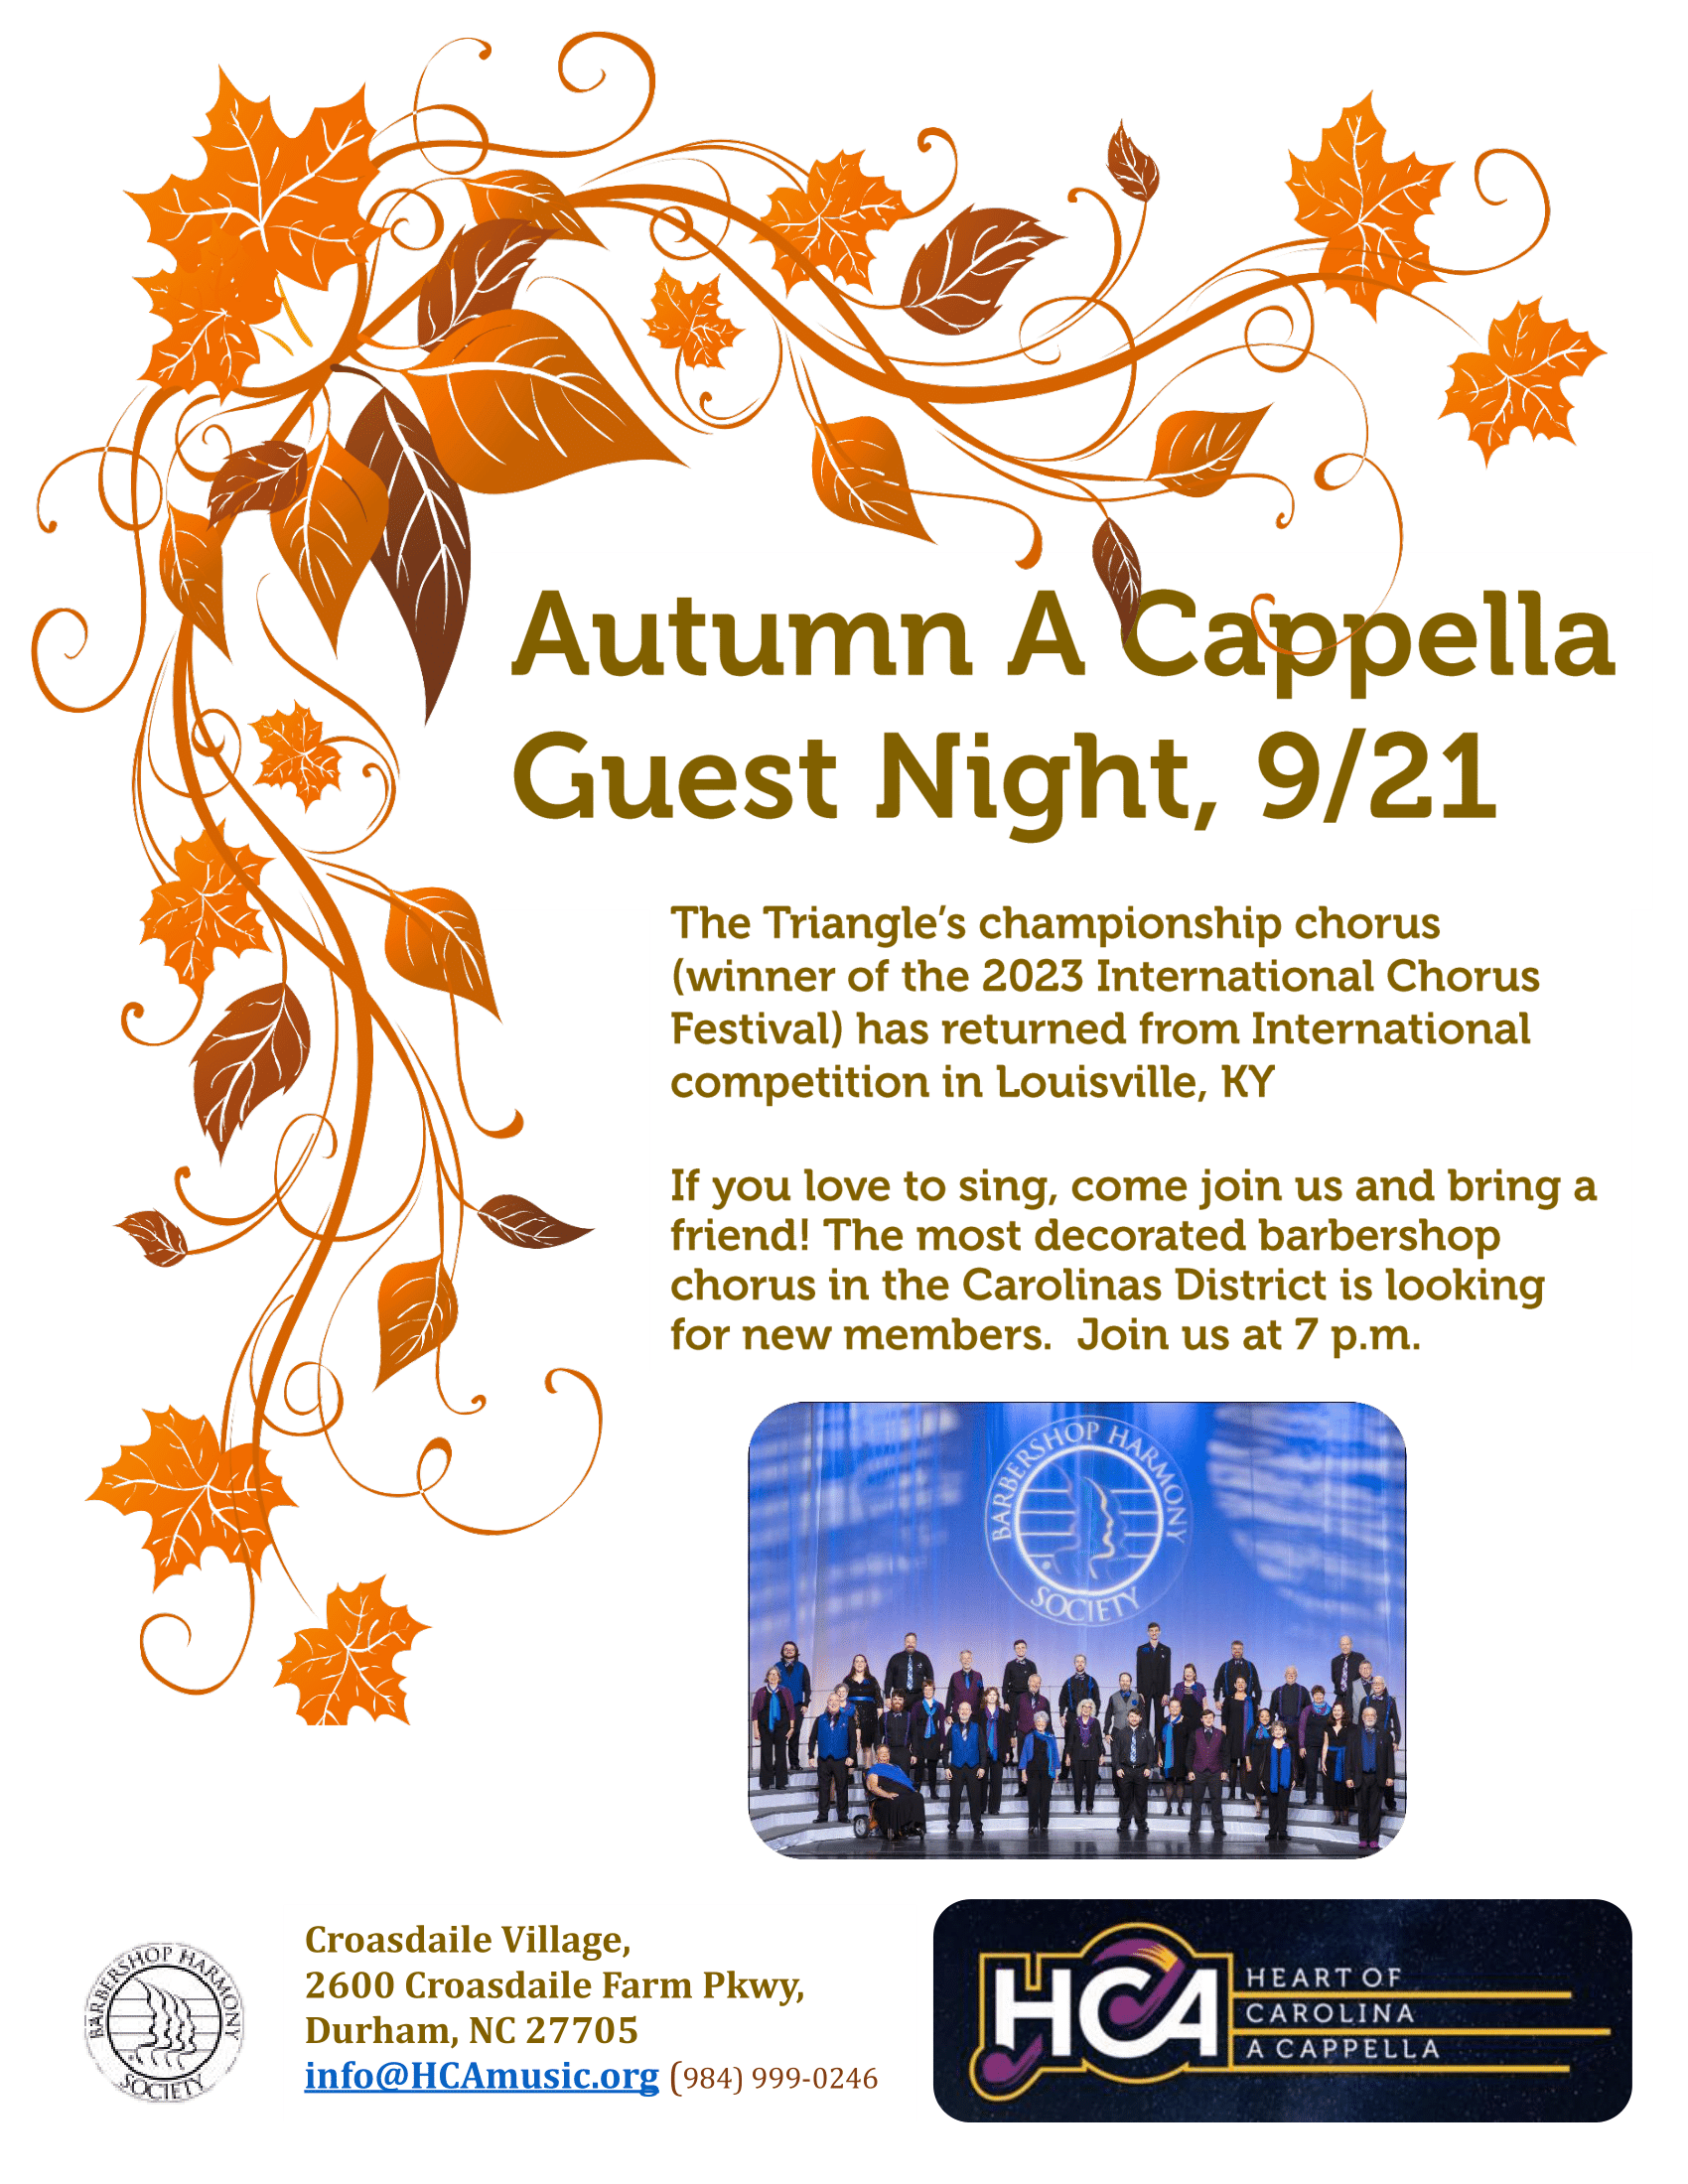 "Autumn A Cappella" Guest Night